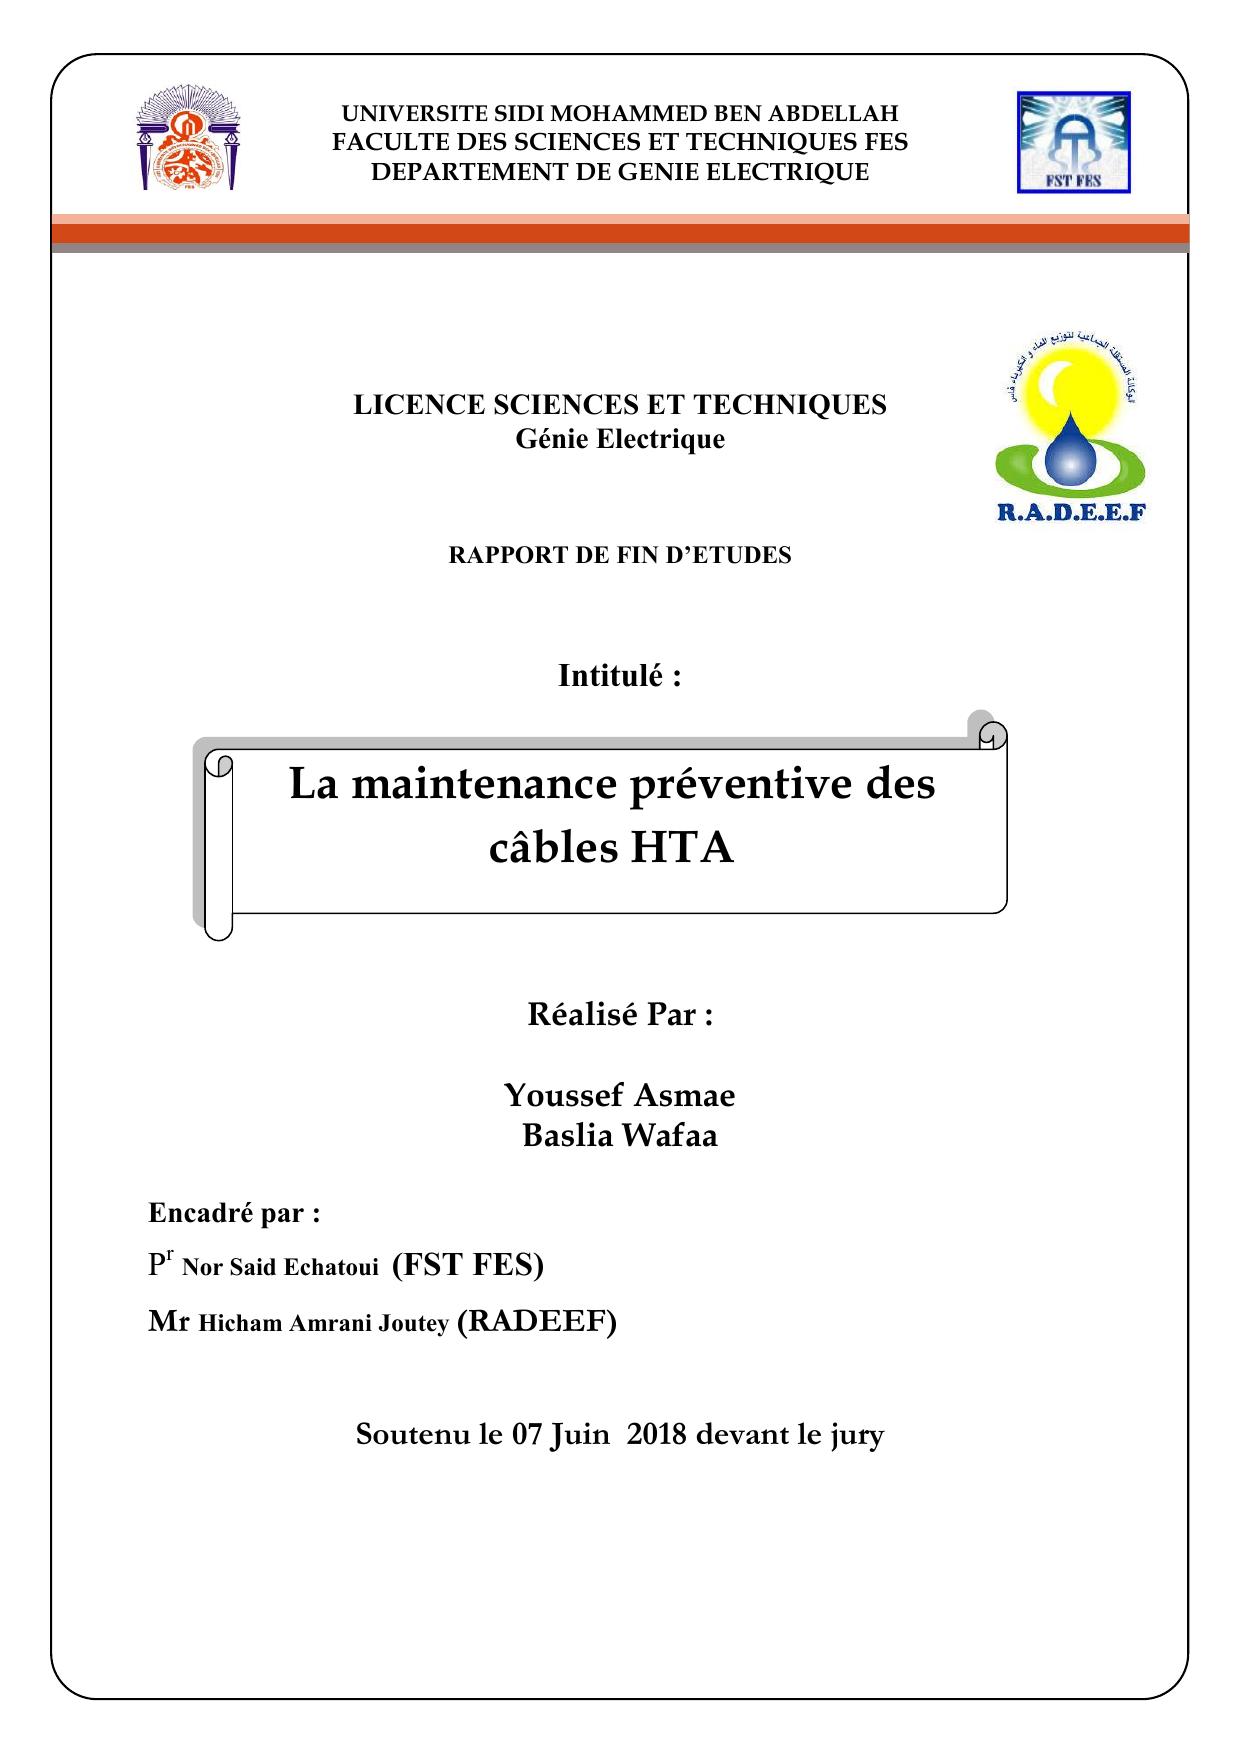 La maintenance préventive des câbles HTA